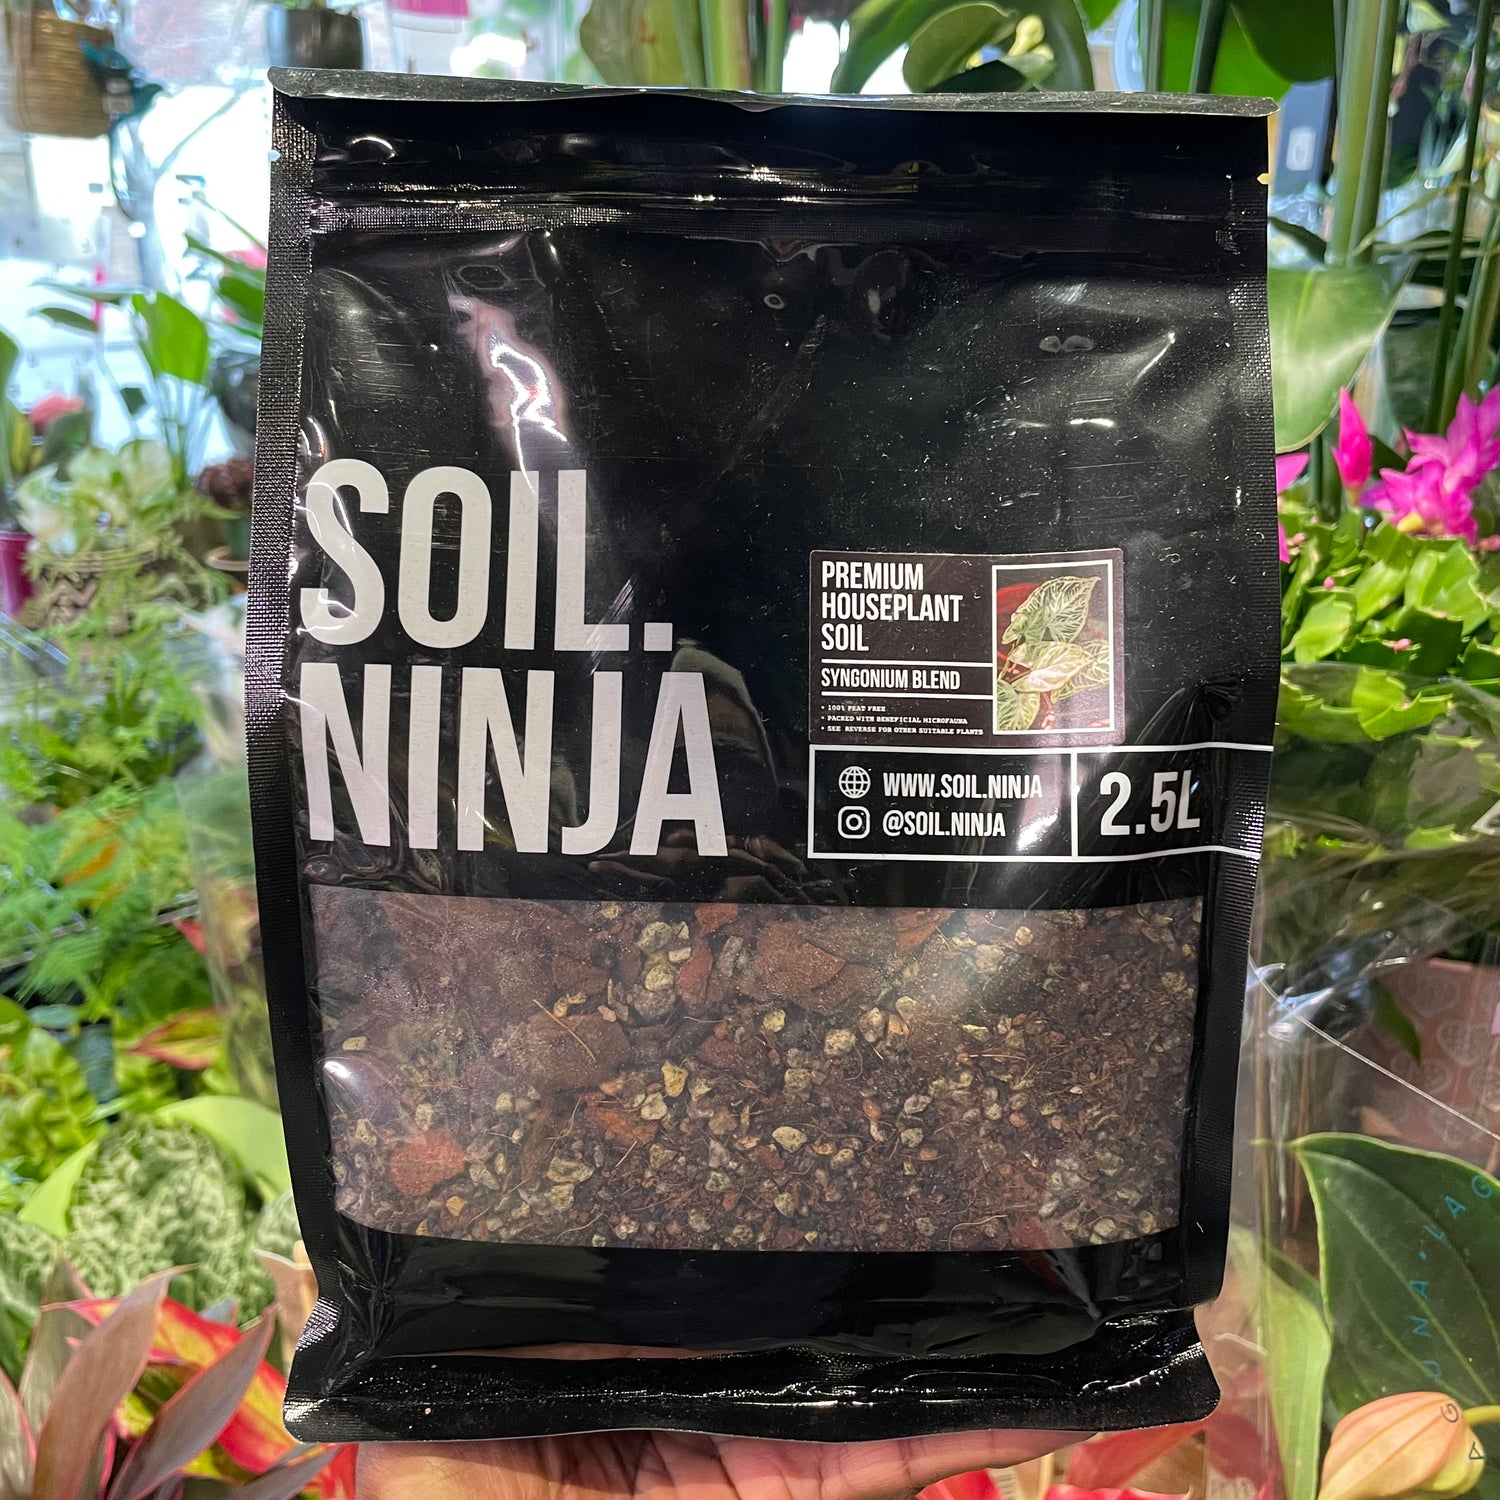 A bag of Soil Ninja | Sygonium 2.5L in Urban Tropicana’s store in Chiswick, London.